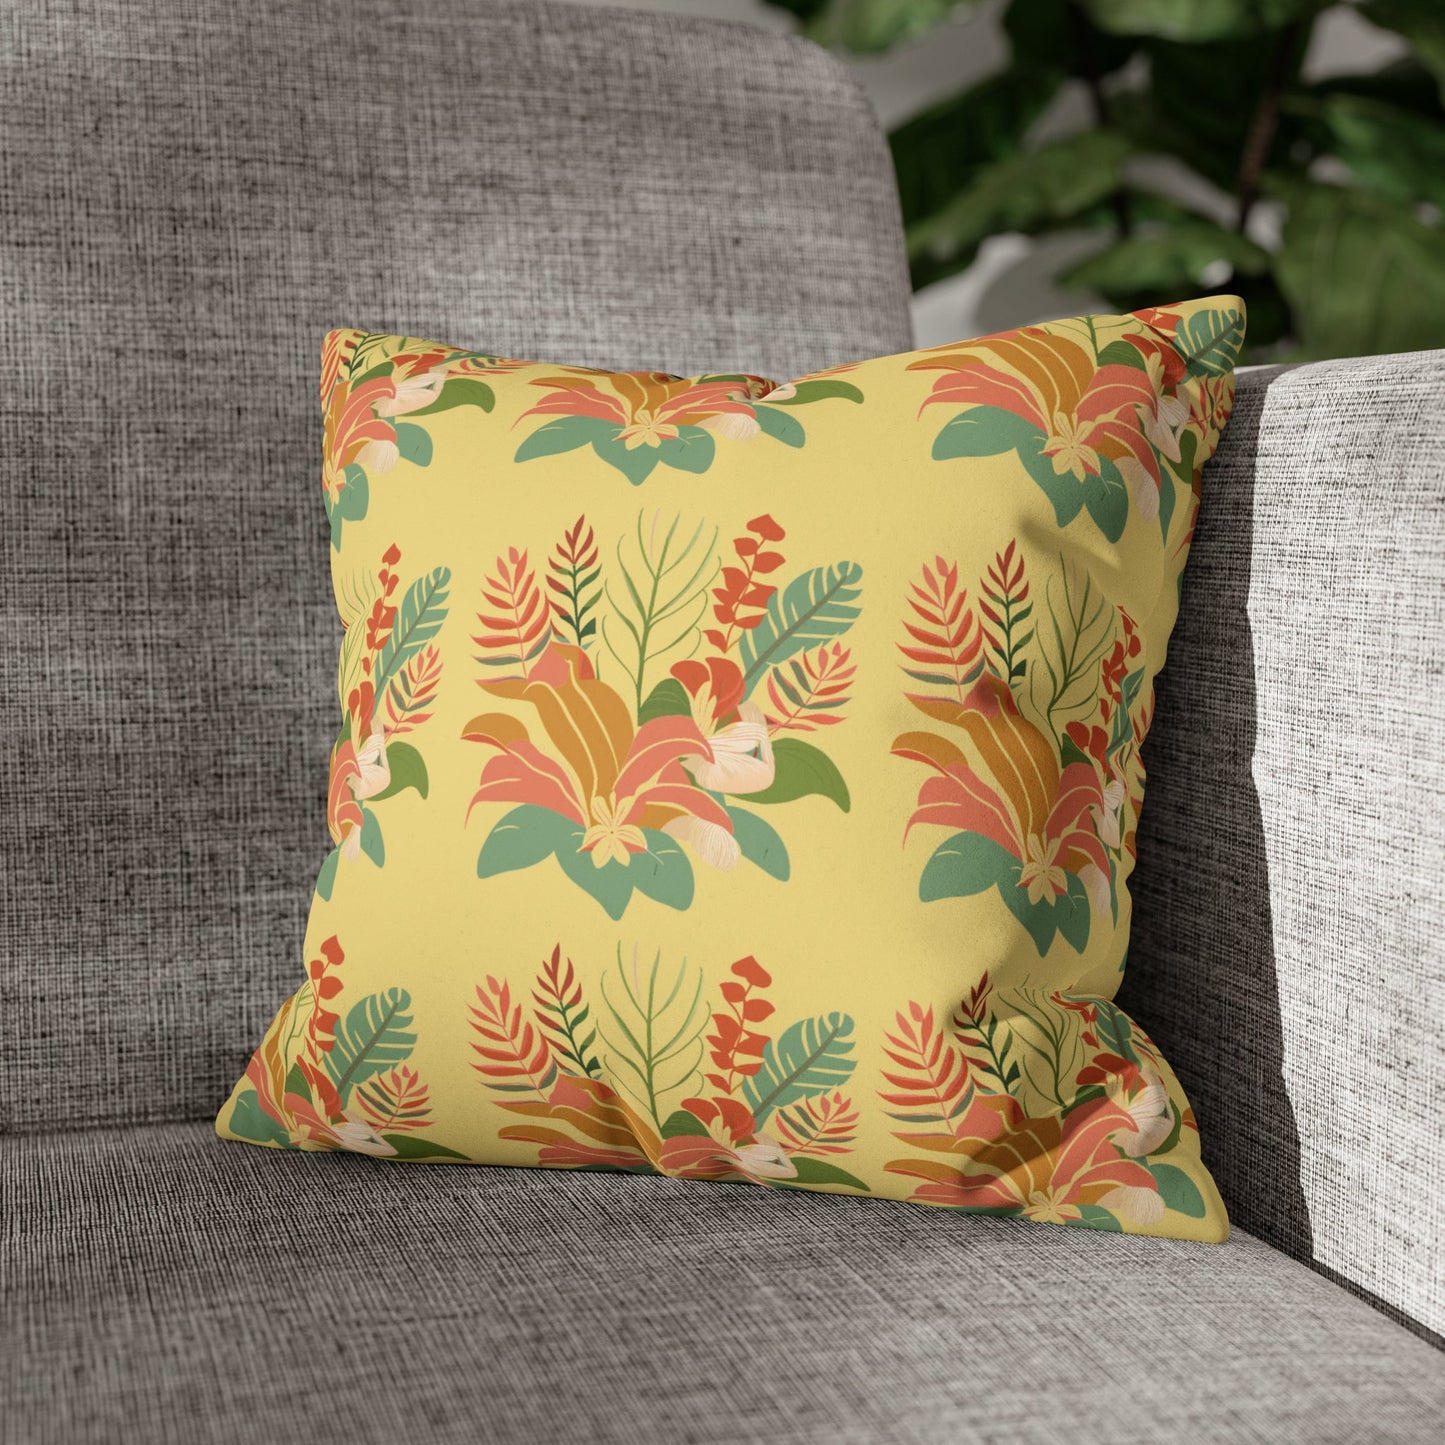 Faux Suede Square Pillow Case Tropical Floral (4 sizes) - Global Village Kailua Boutique